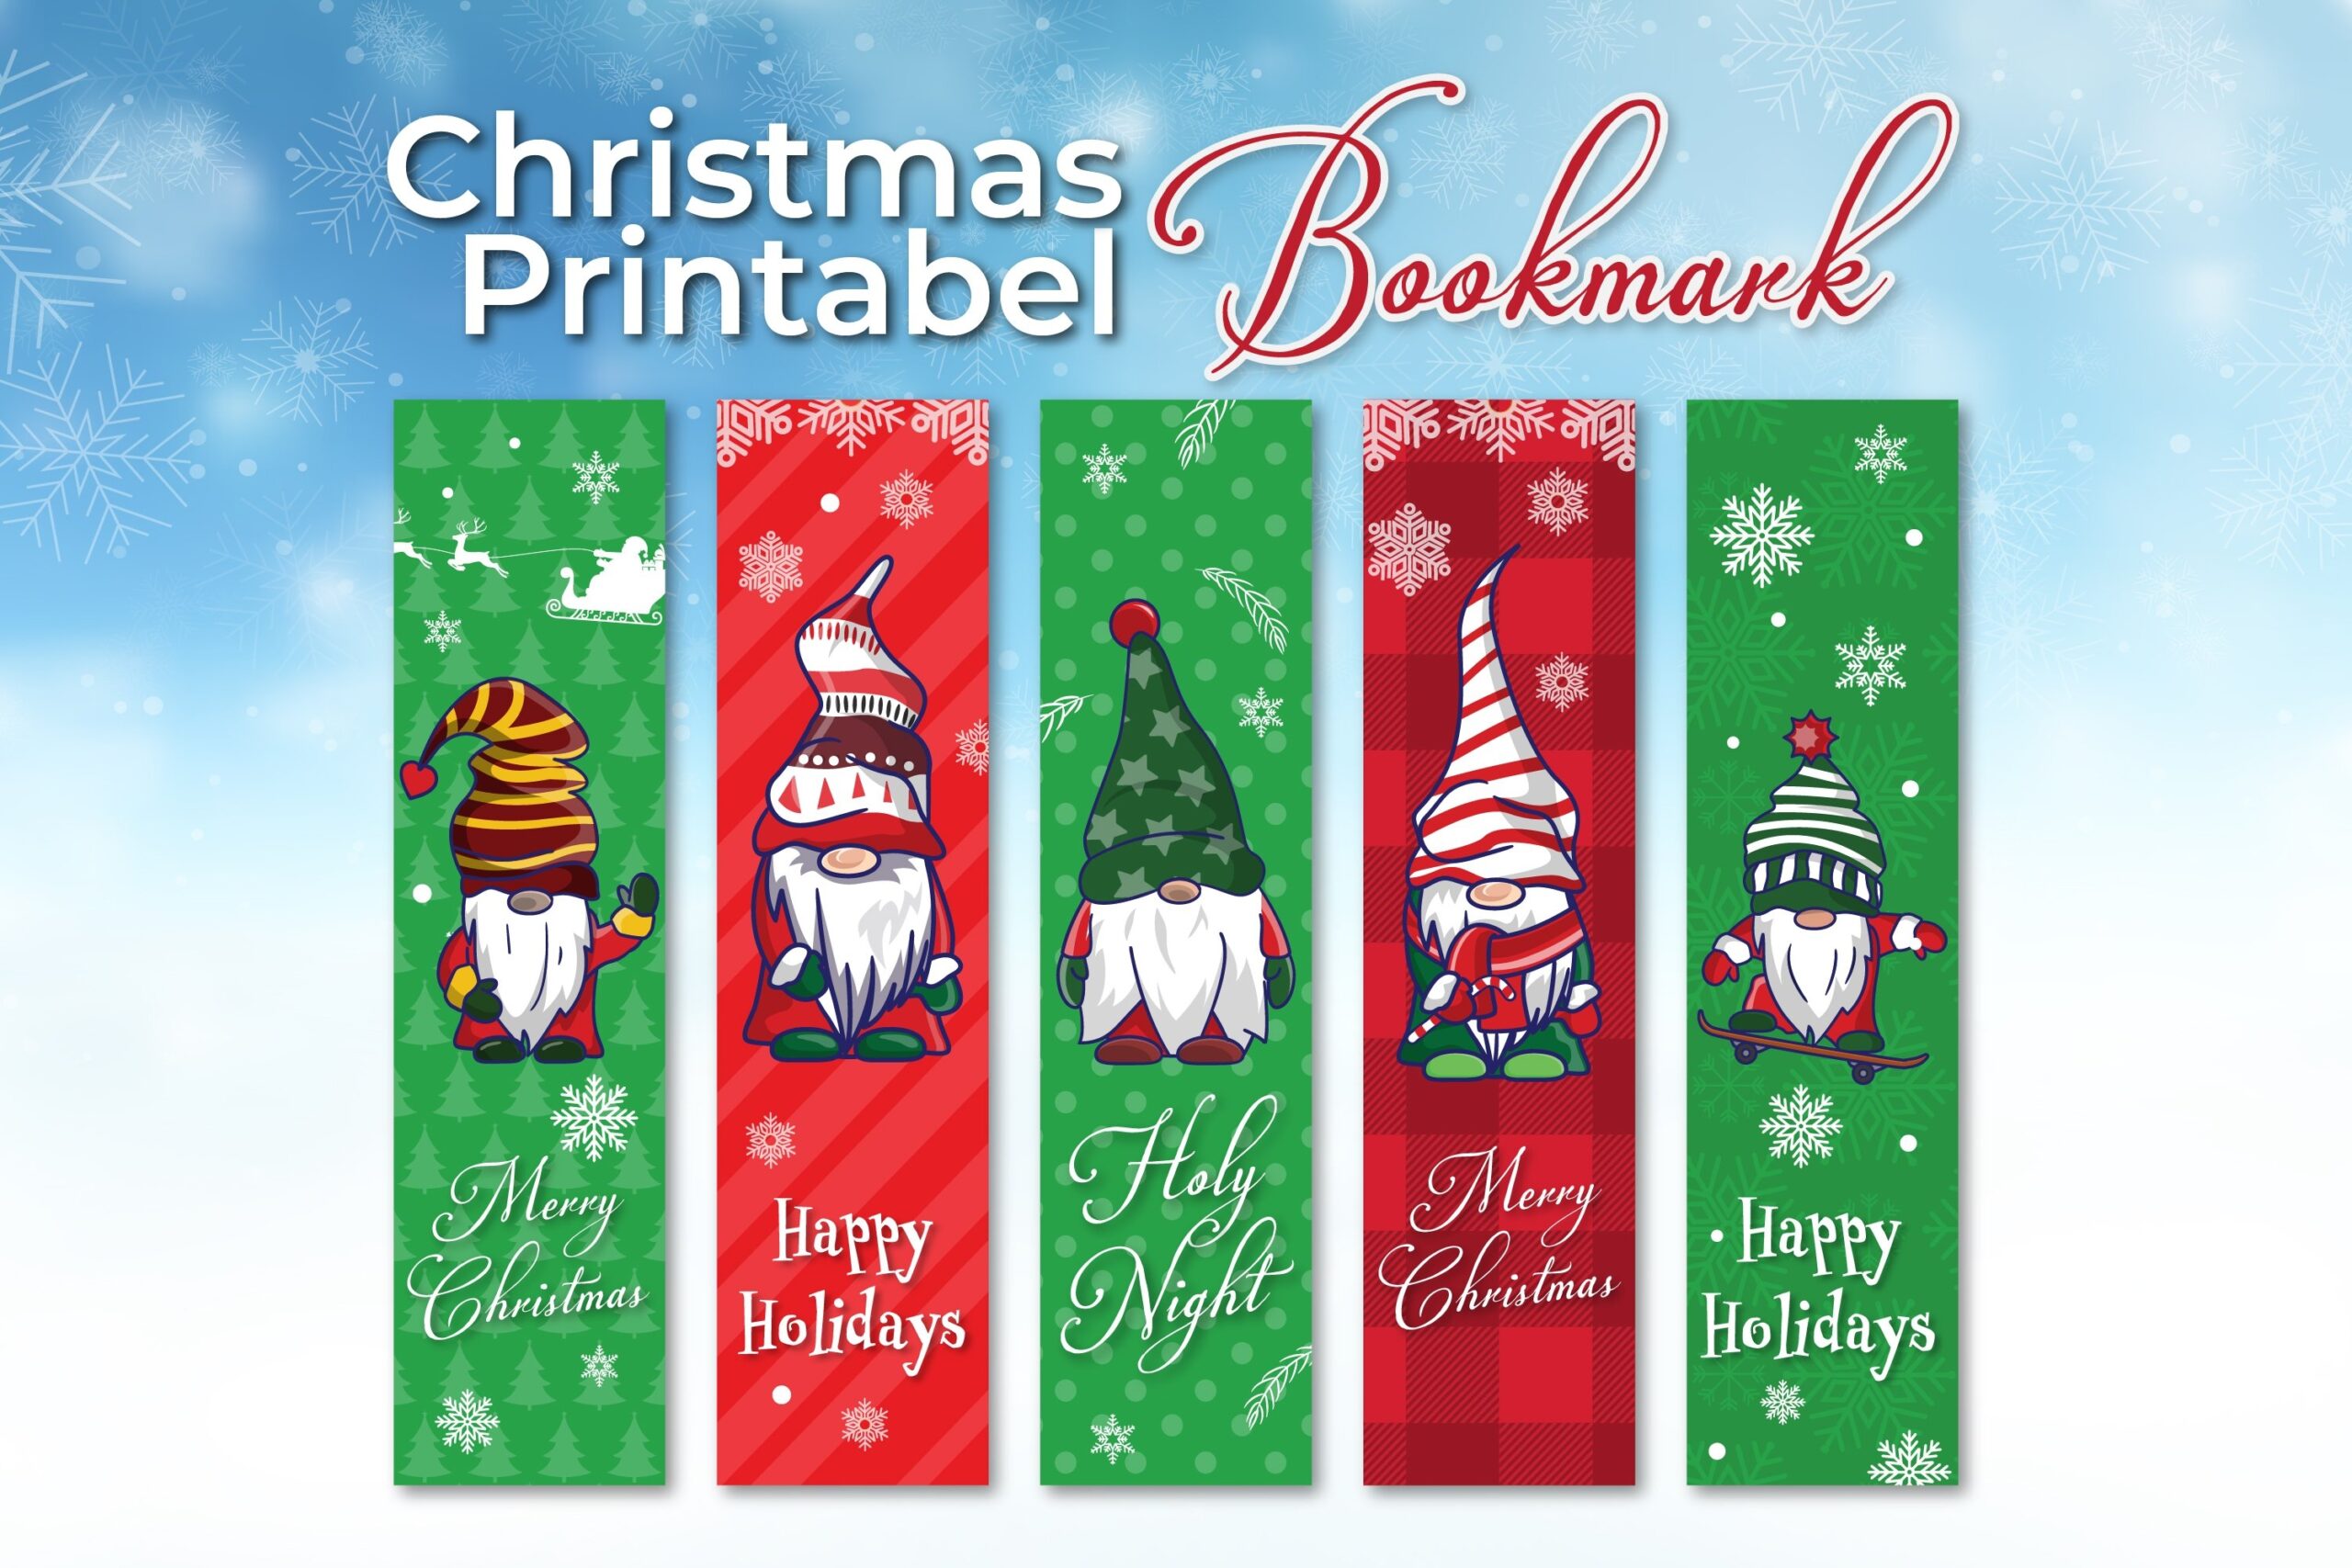 Christmas Gnome Printable Bookmark Template - Free Printable Bookmarks For Christmas